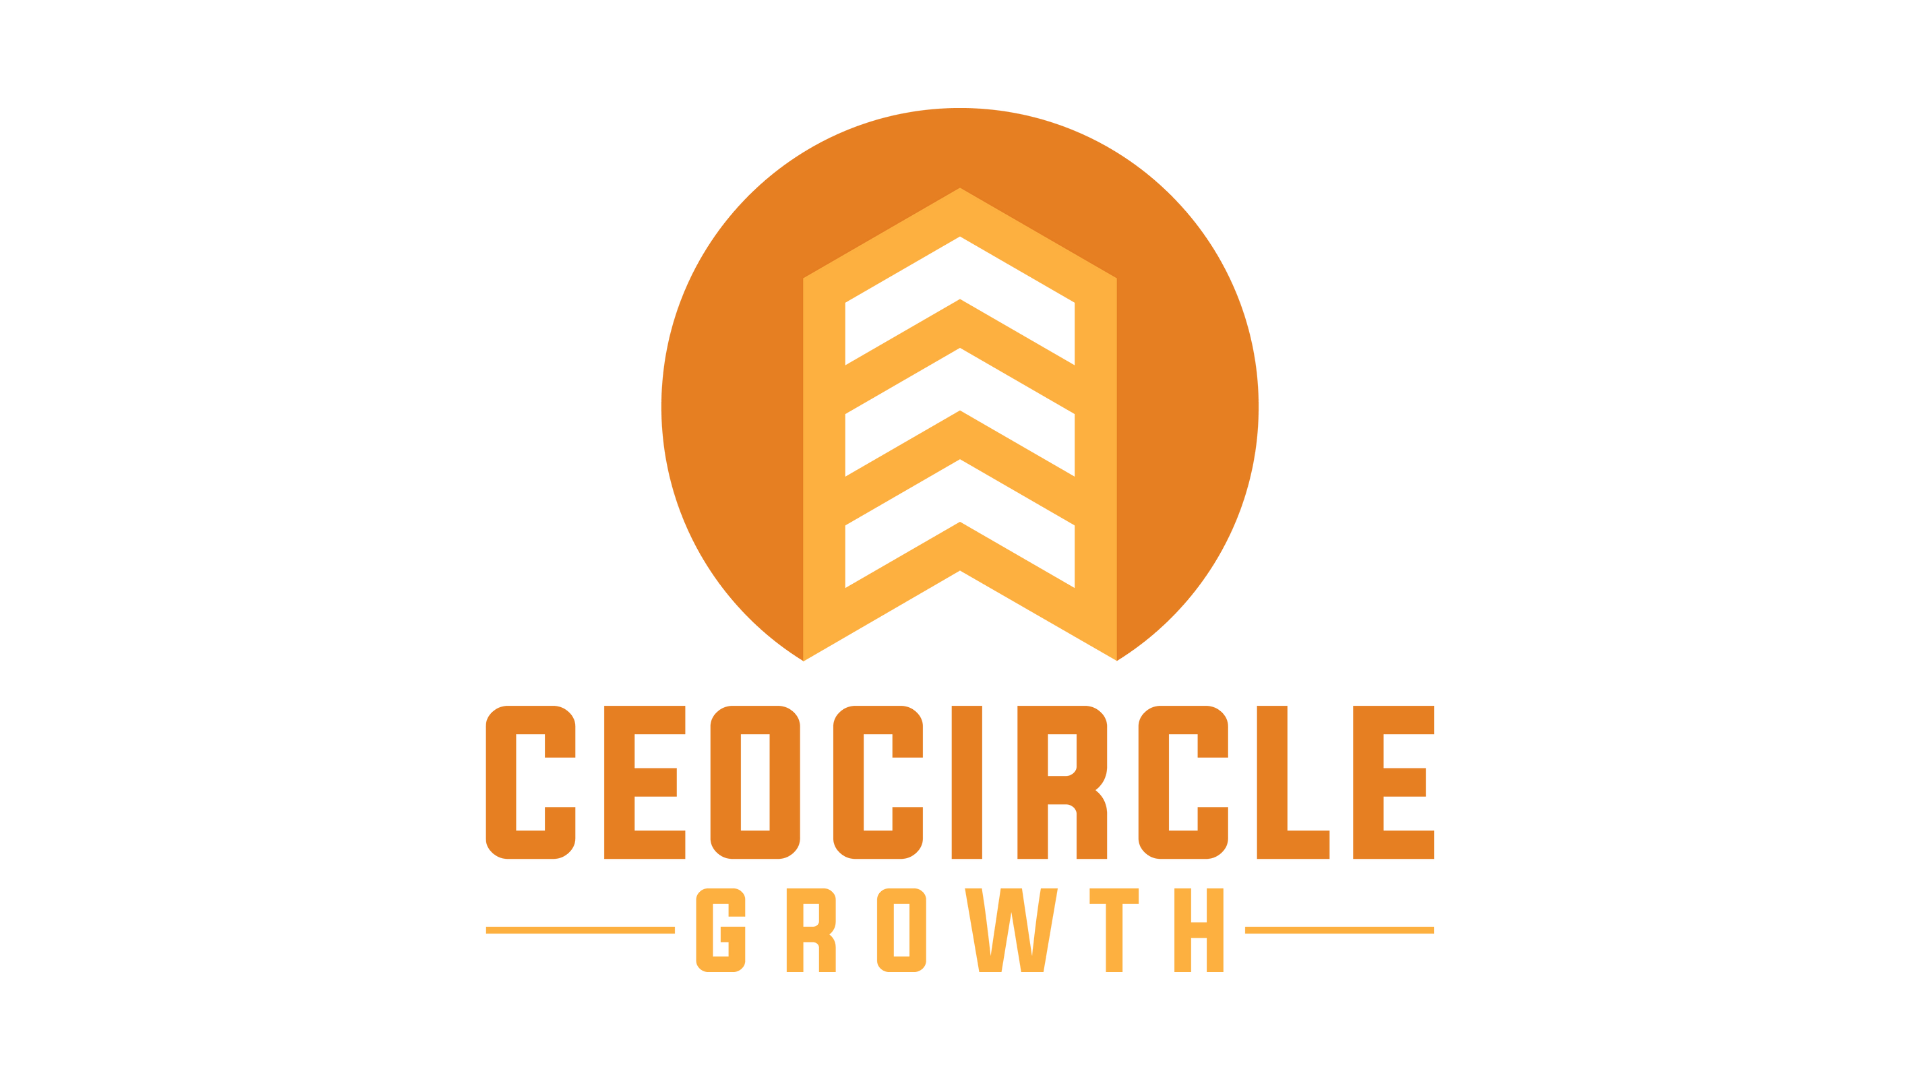 CEO Circle